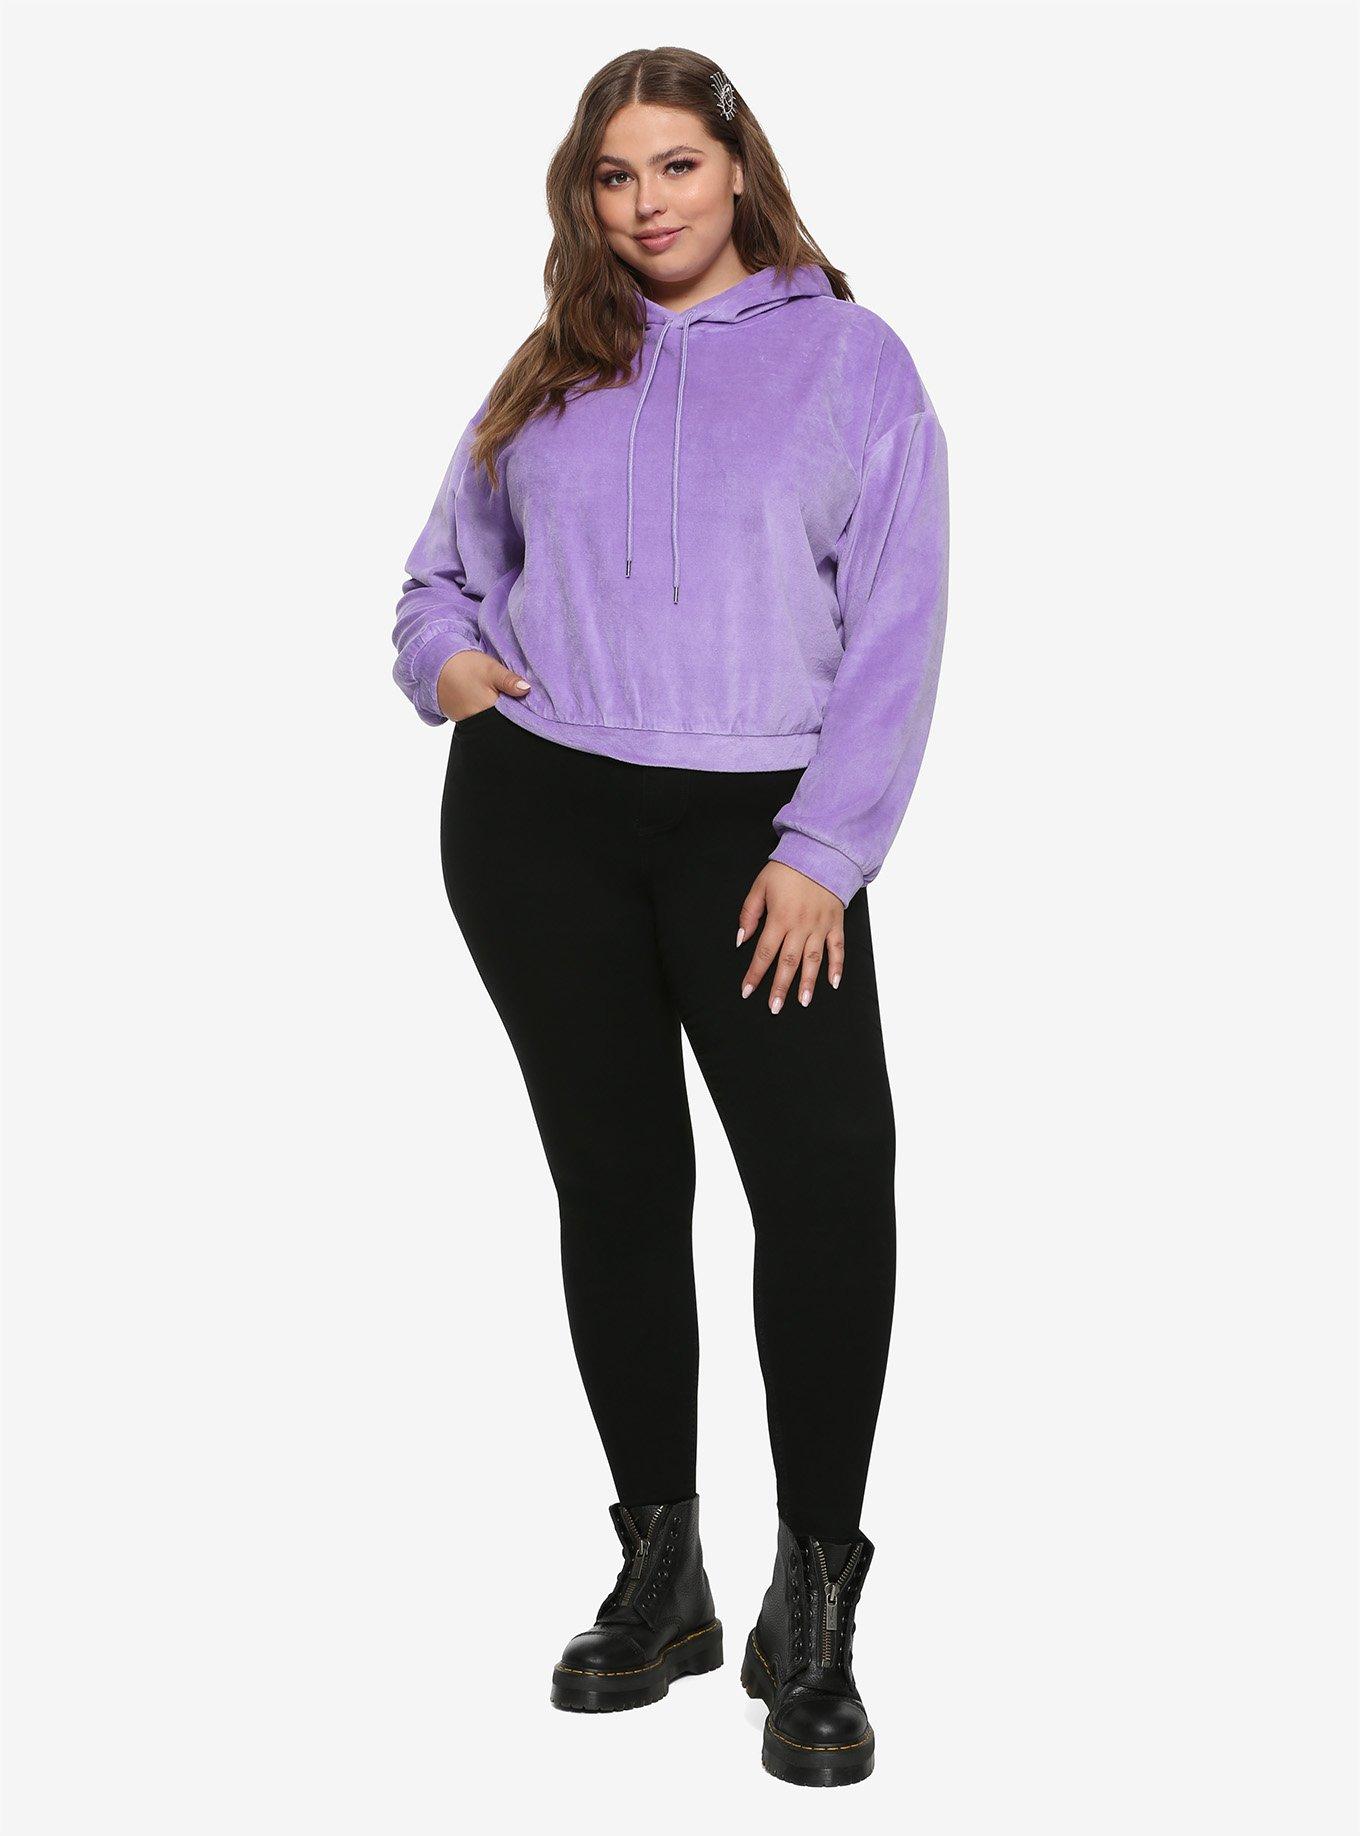 Lavender Velour Girls Crop Hoodie Plus Size, TEAL, alternate